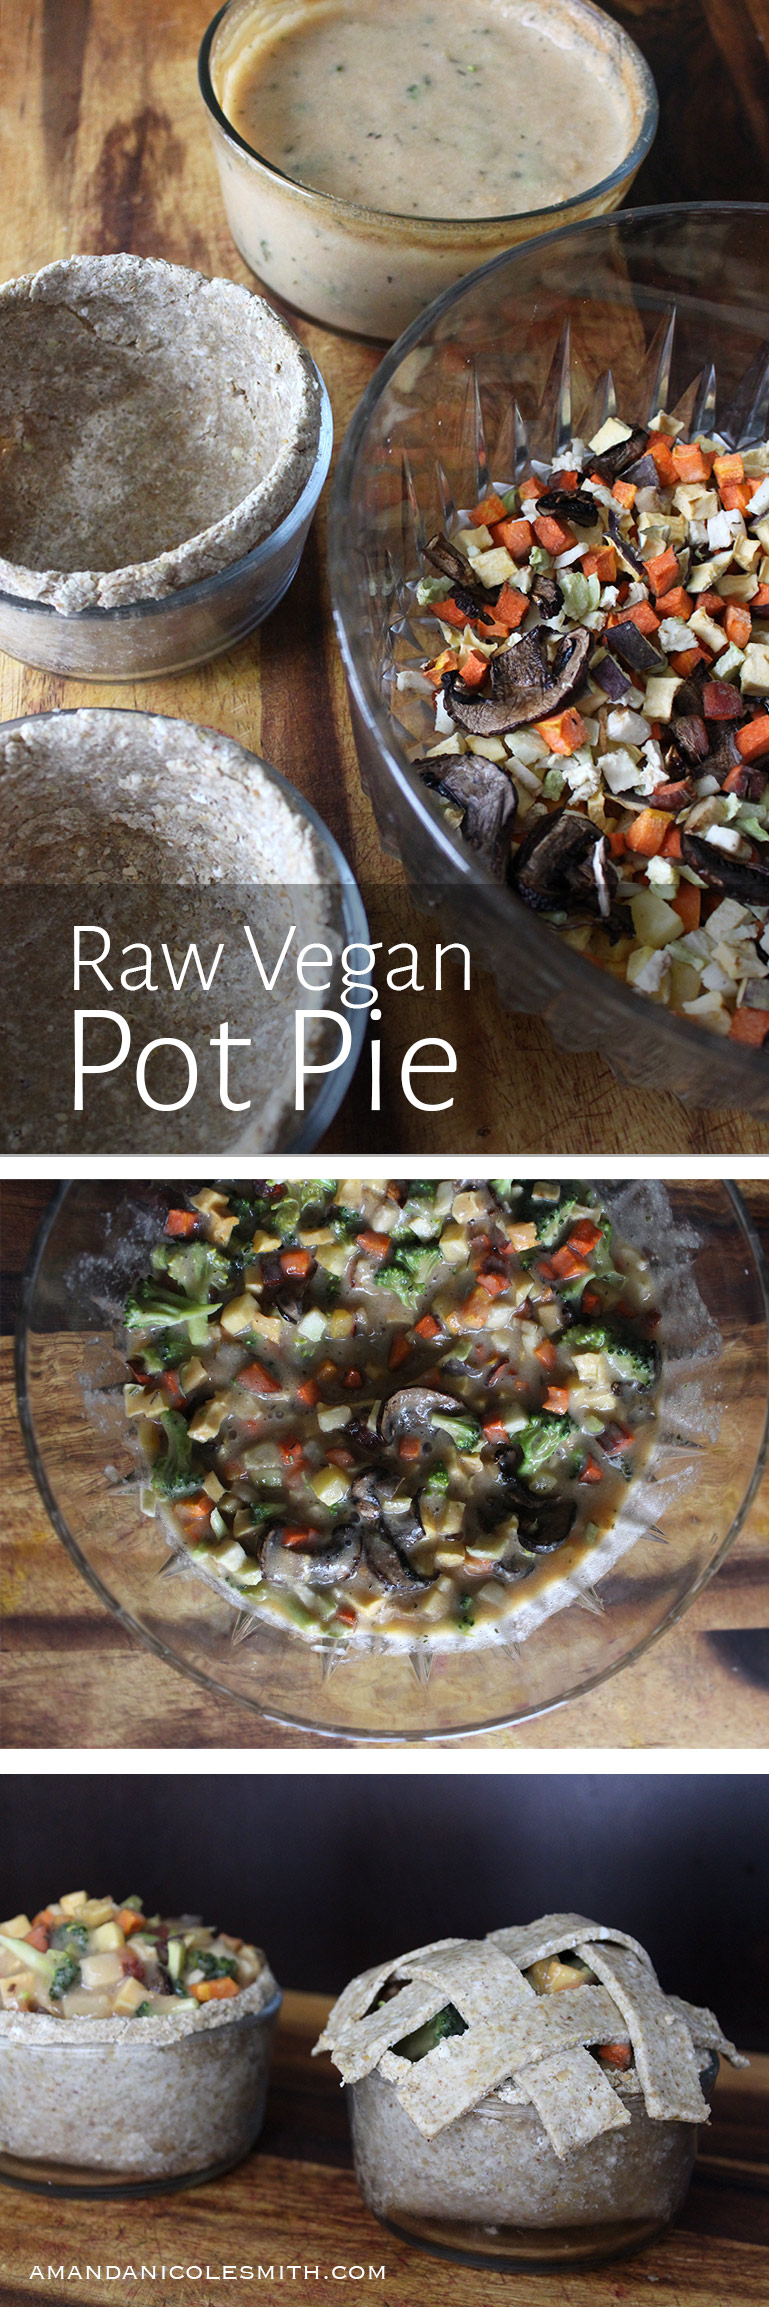 Raw Vegan Pot Pie